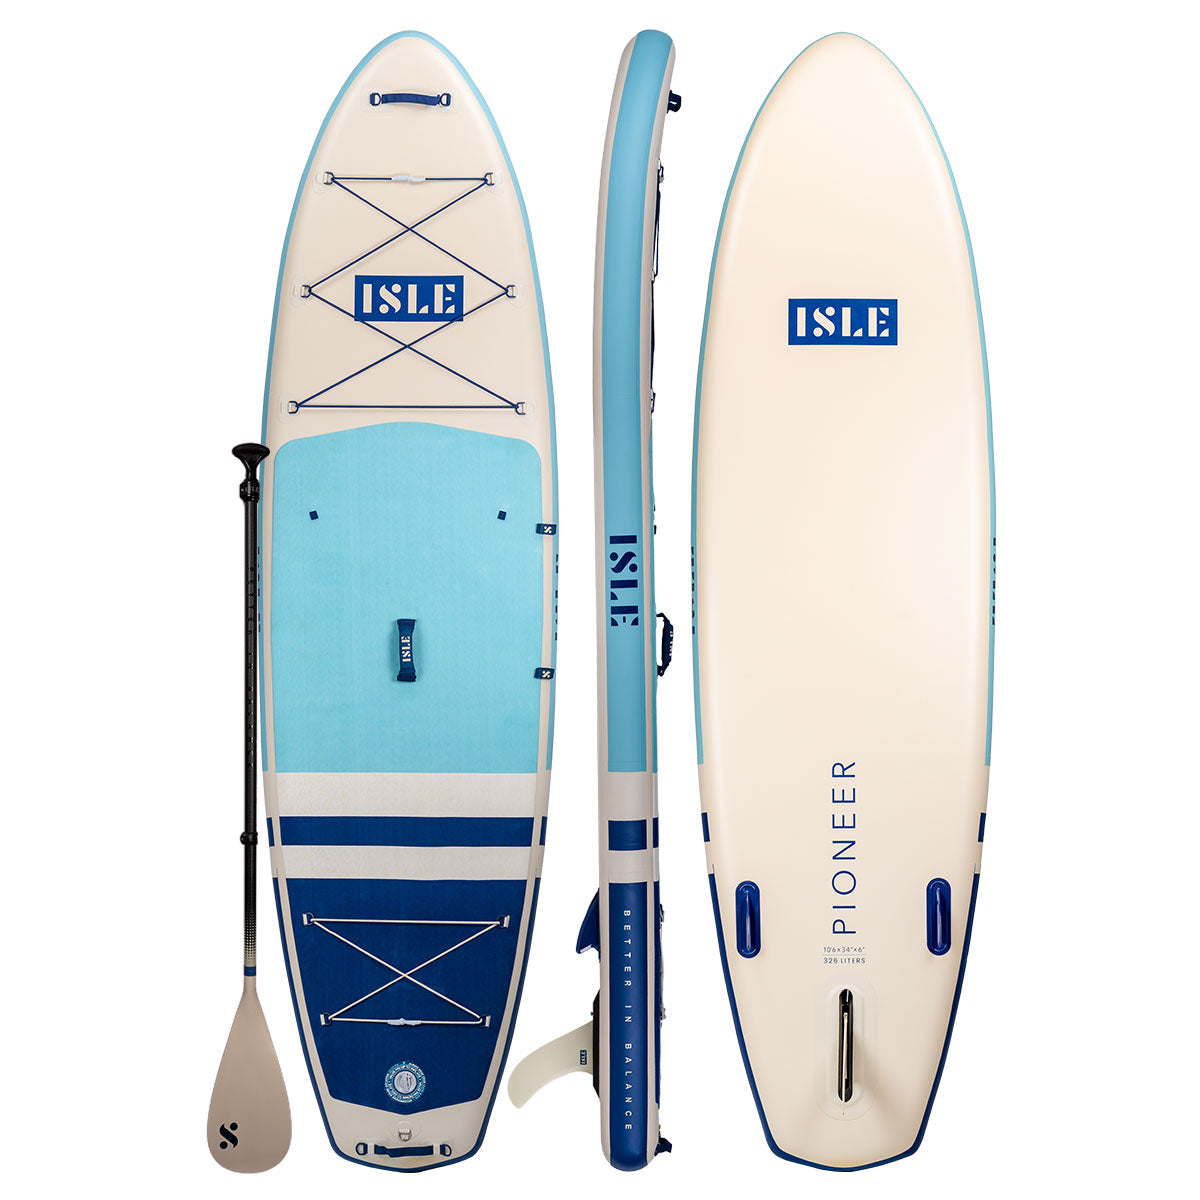 | ISLE Paddle | Boards Board | Inflatable ISLE 2.0 Paddle Explorer